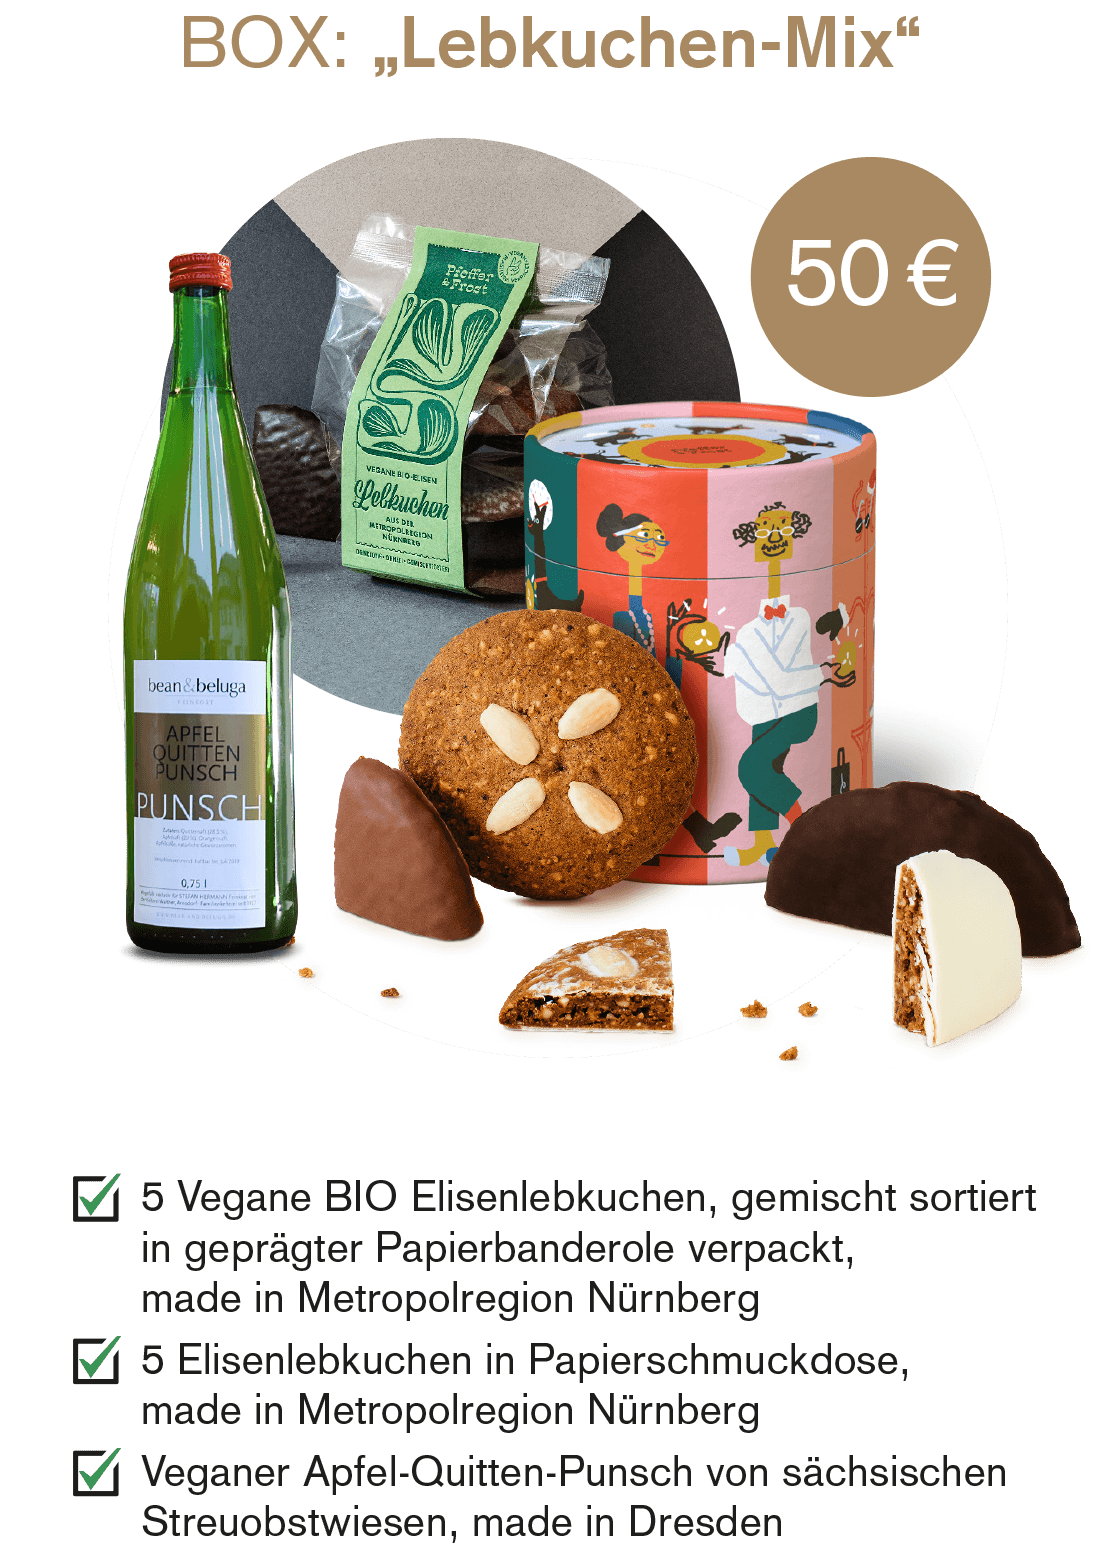 Weihnachts-Geschenkebox "Lebkuchenmix" für 50 Euro